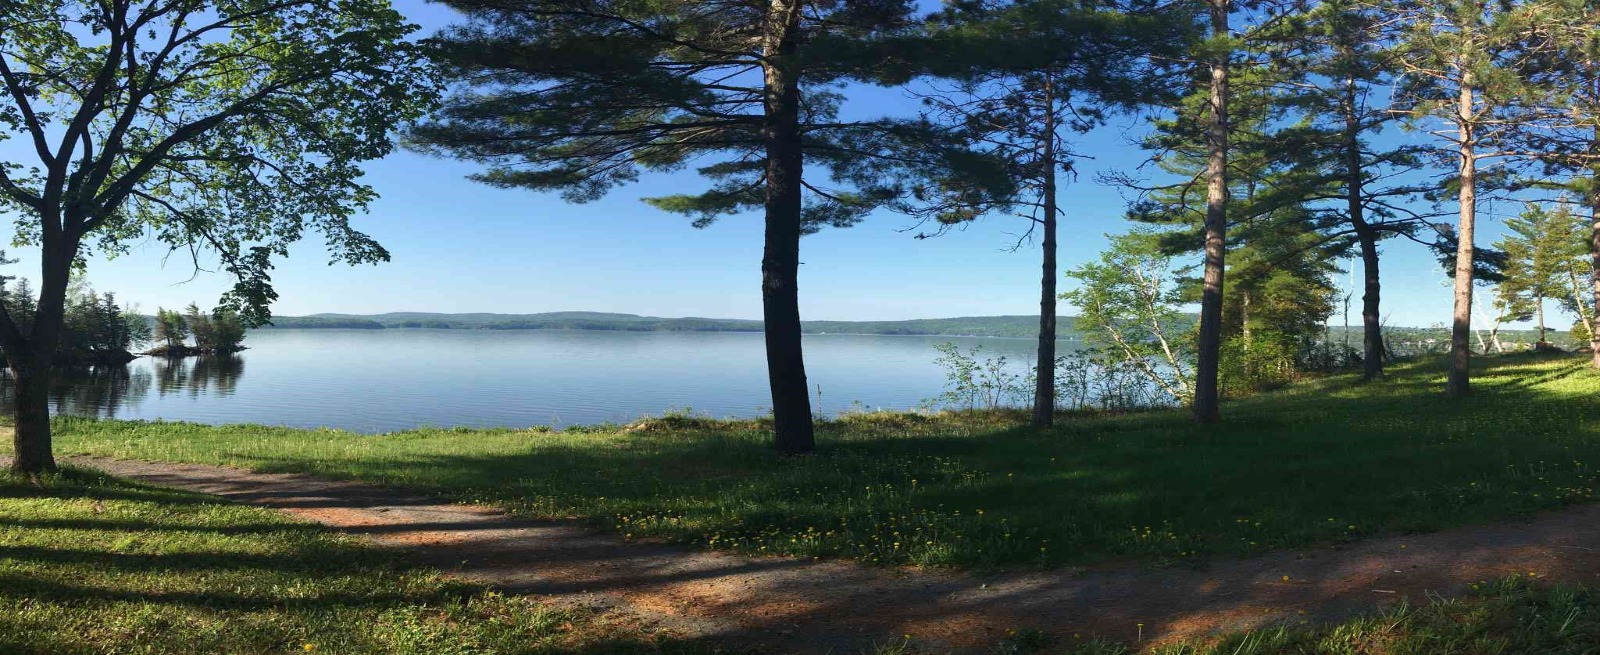 View of Calabogie Lake at Barnet Park